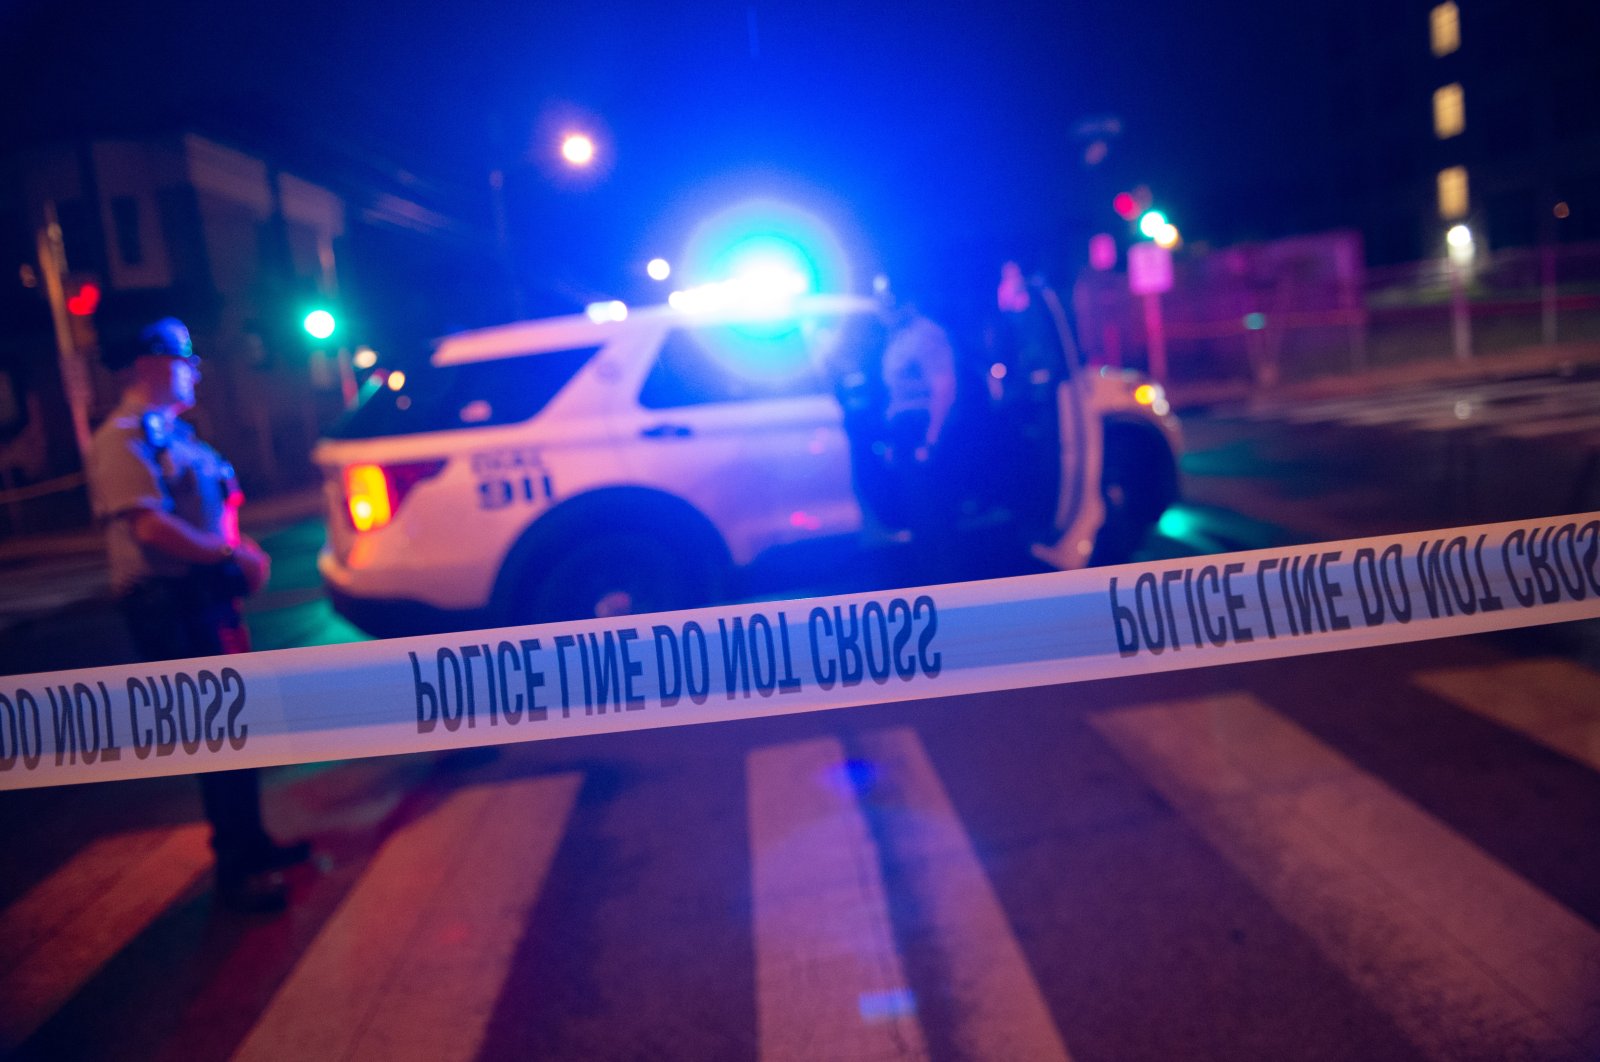 Penembak bersenjata berat membunuh 5 orang dalam penembakan massal di Philadelphia